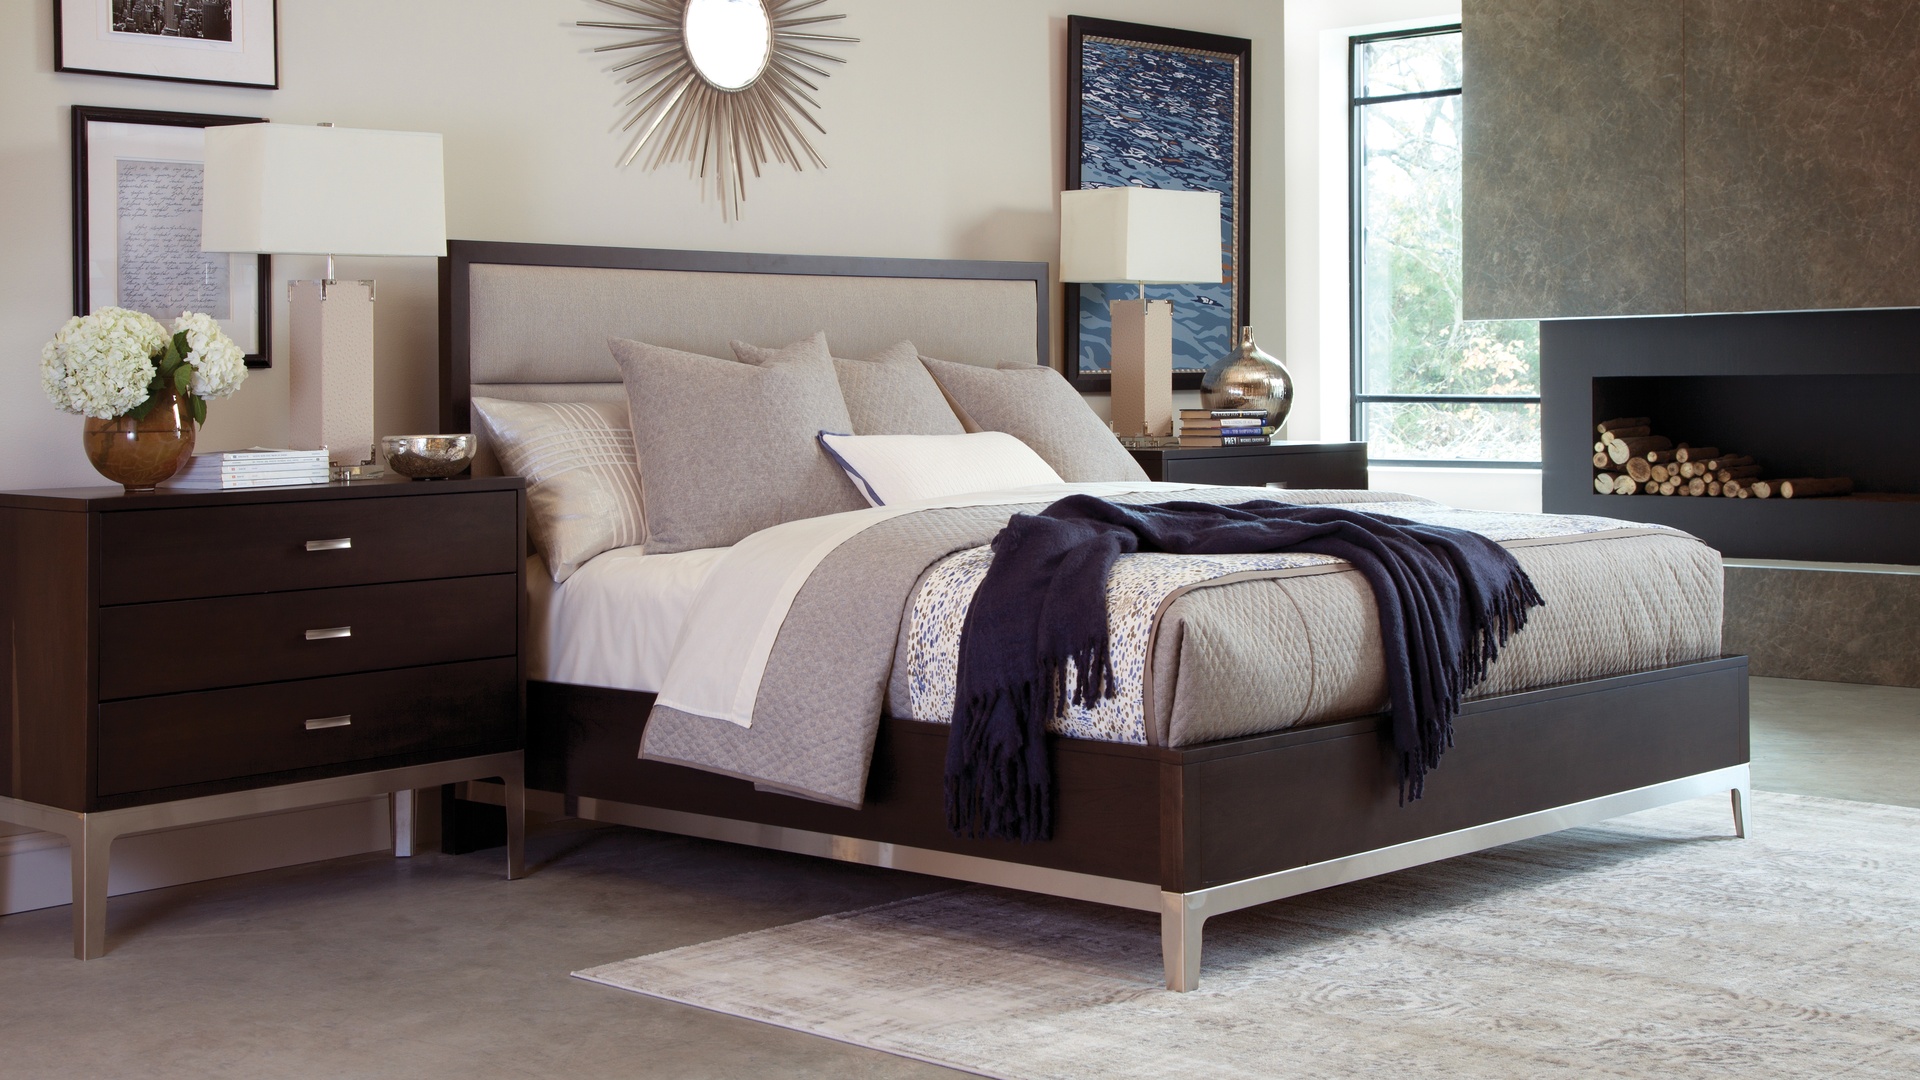 durham bedroom furniture for sale